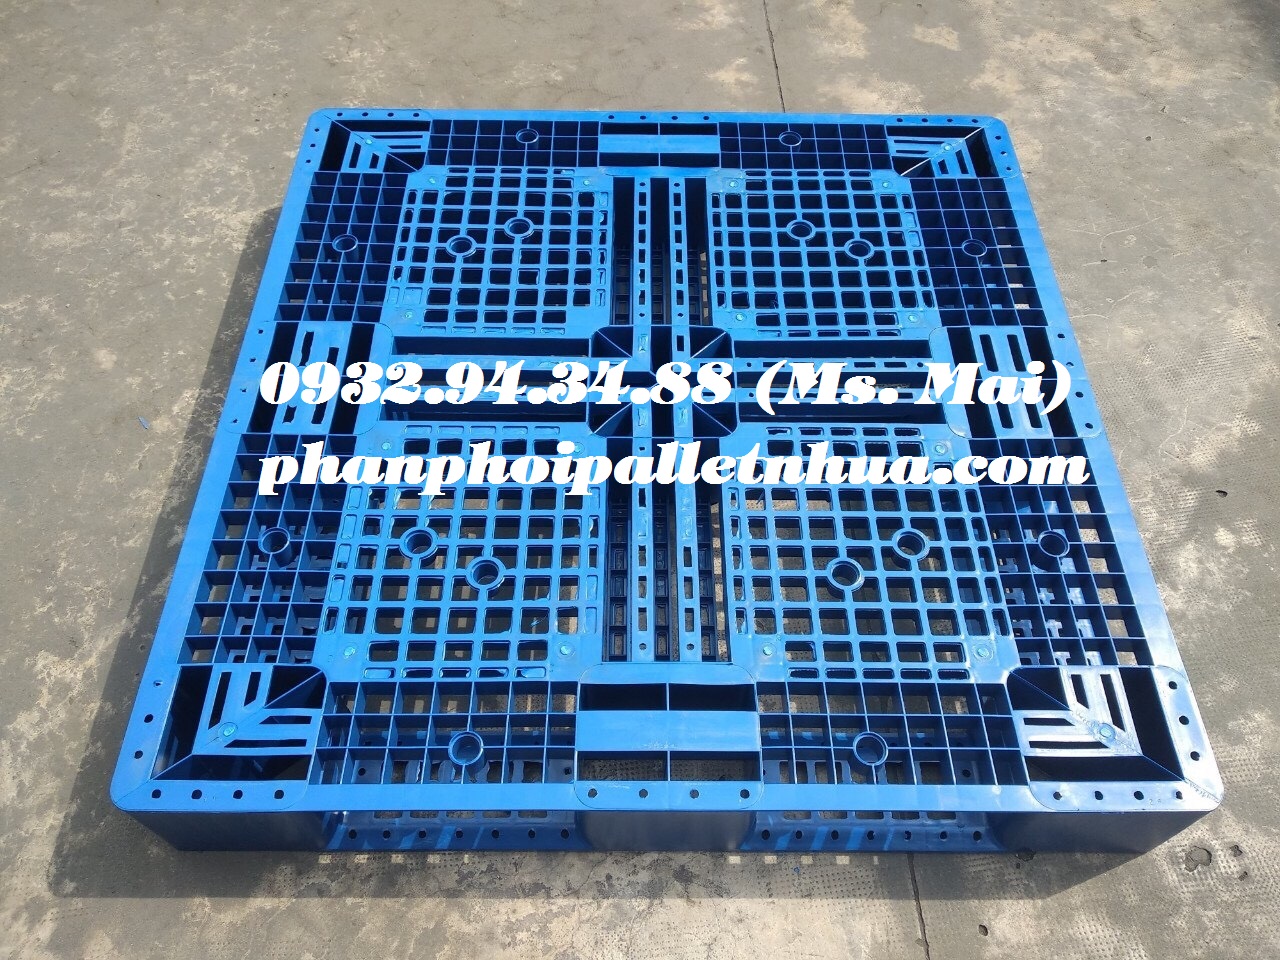 Pallet nhựa tại Bình Định, liên hệ 0932943488 (24/7)